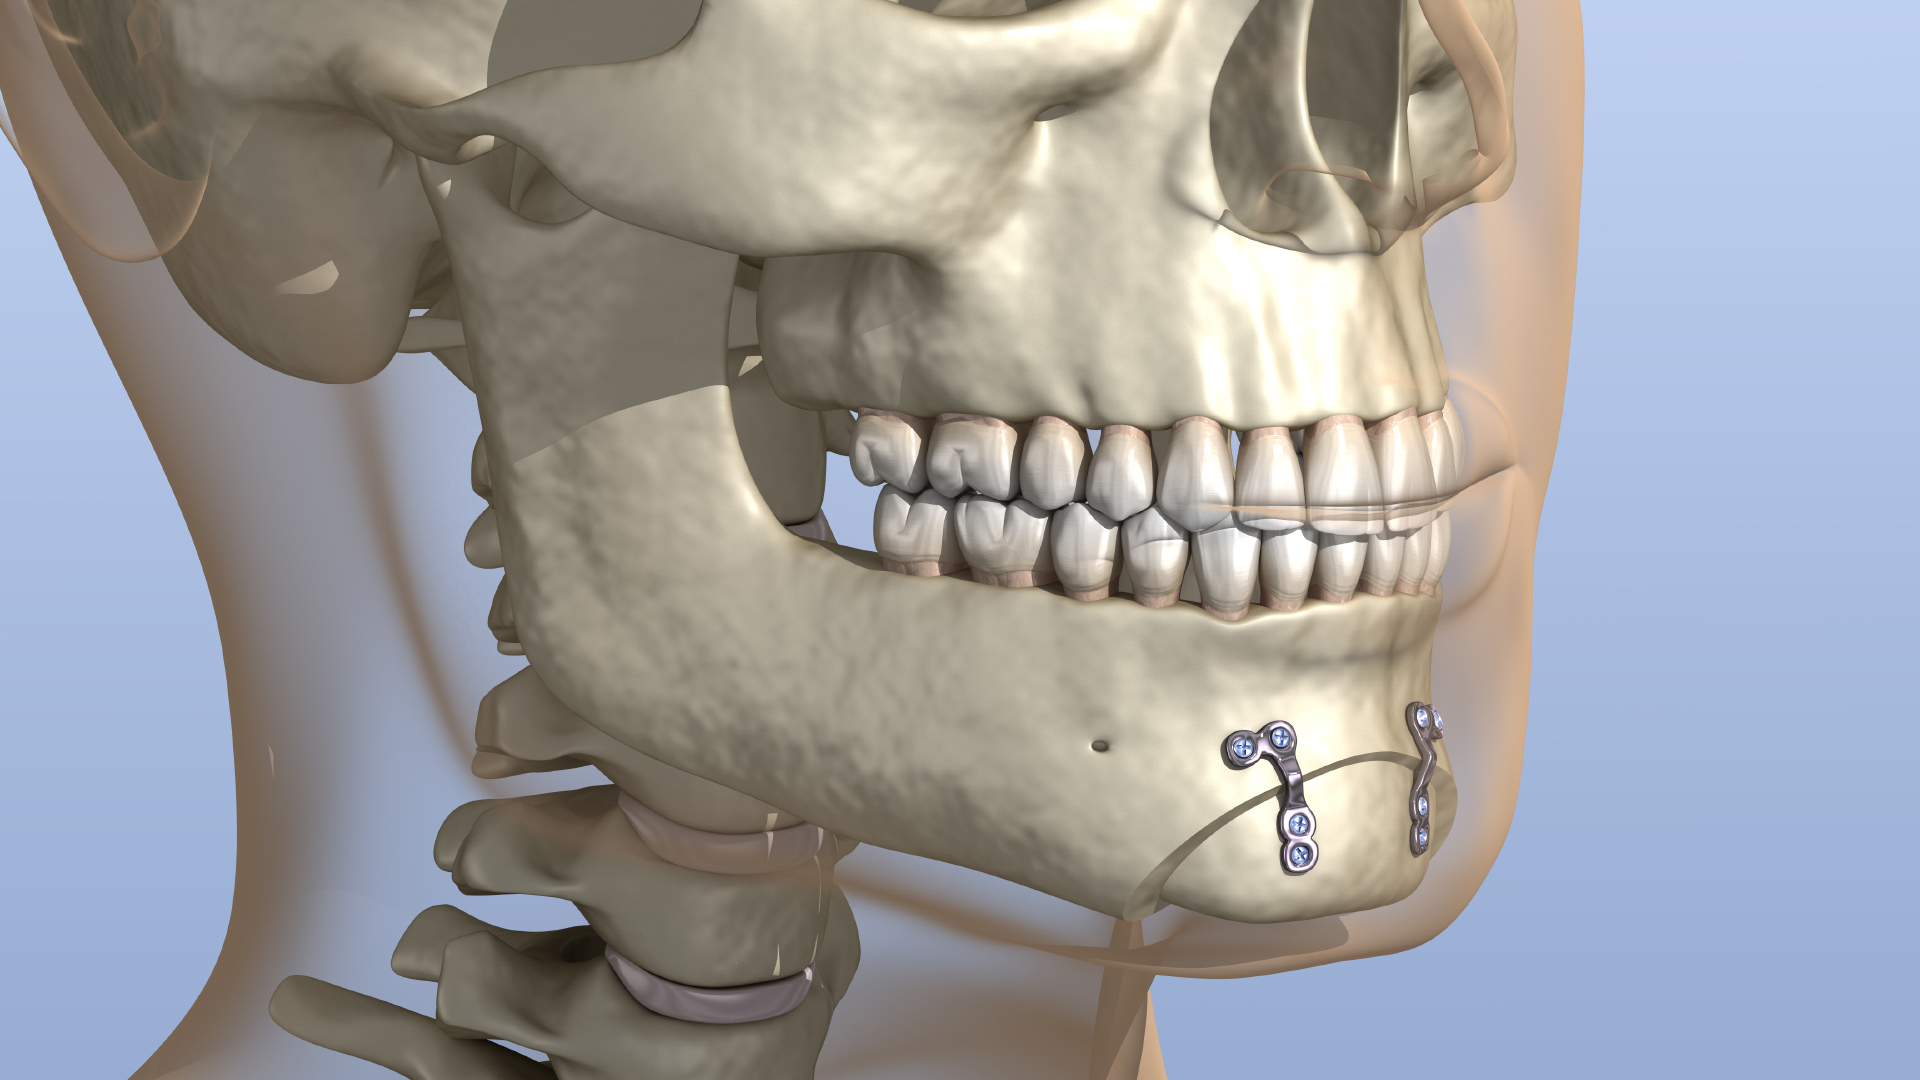 osteotomy (cut chin bone) 3D model